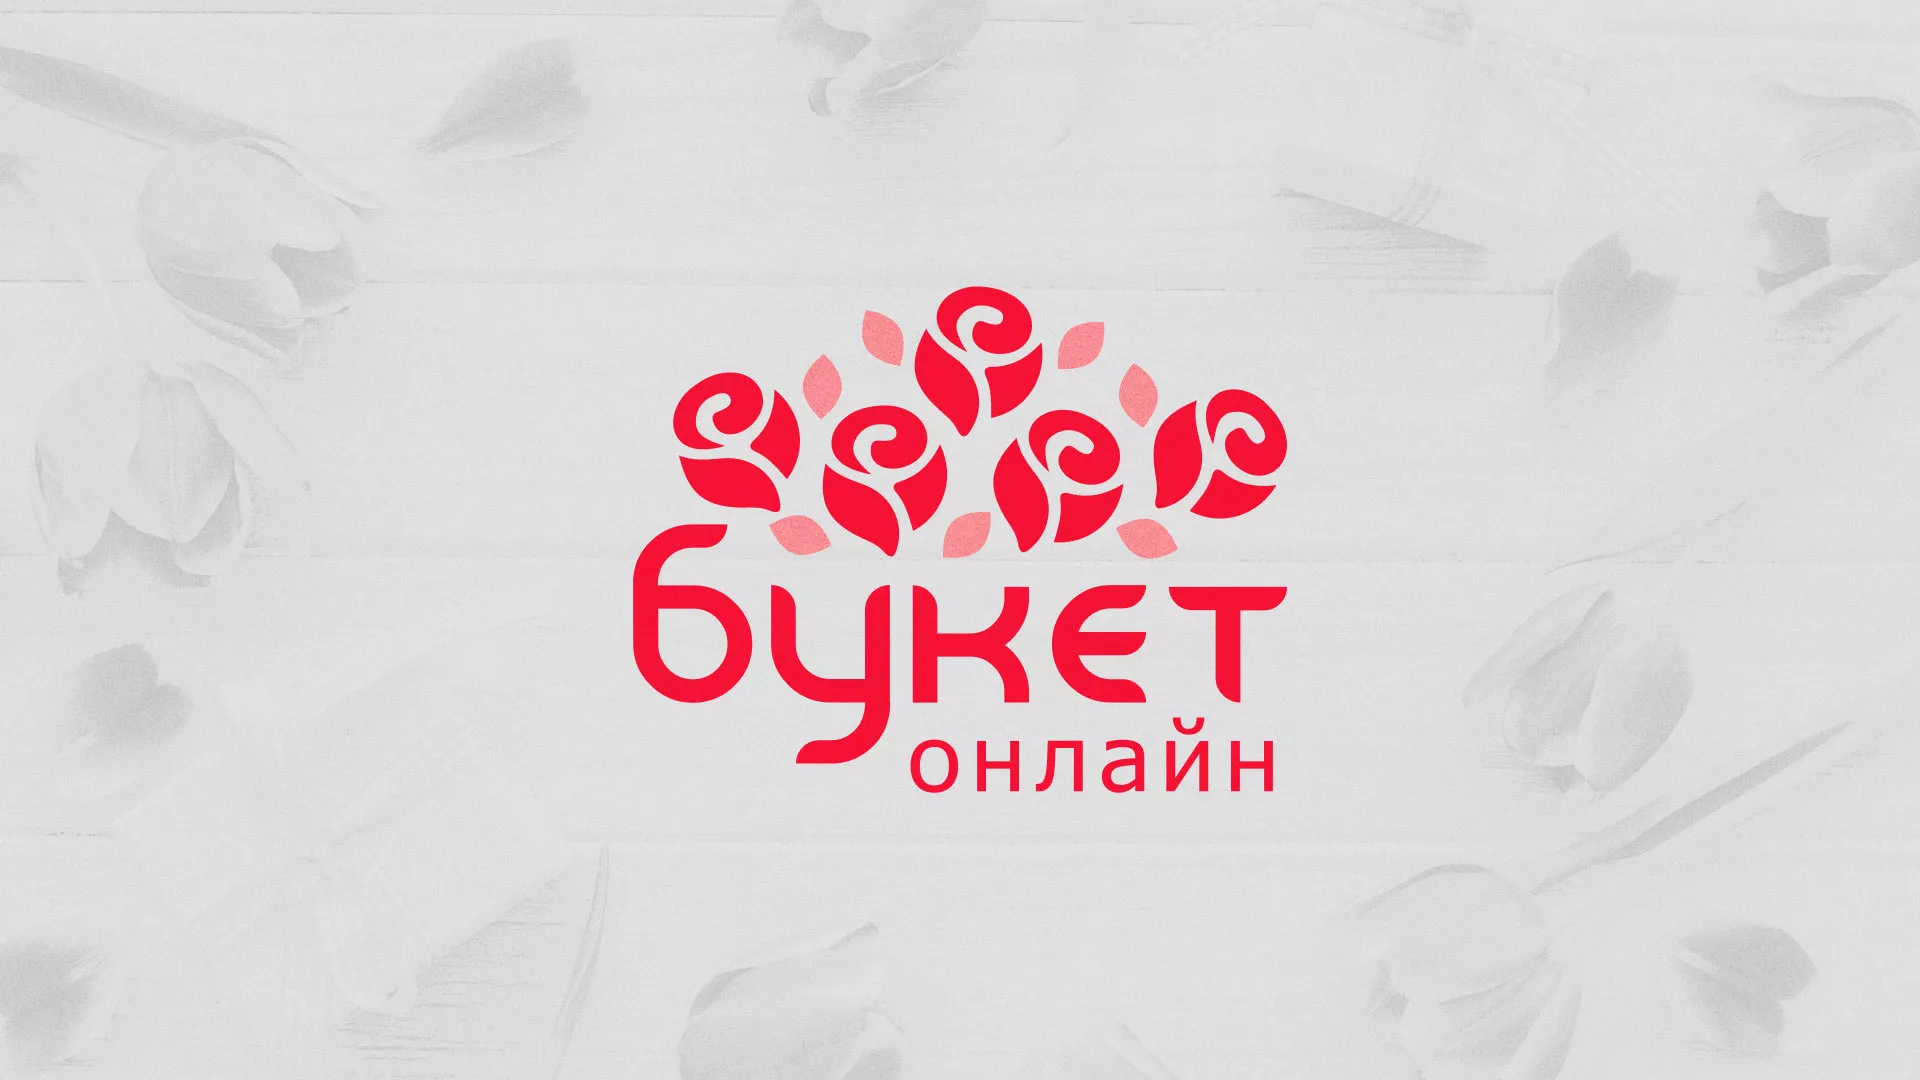 Создание интернет-магазина «Букет-онлайн» по цветам в Артёме